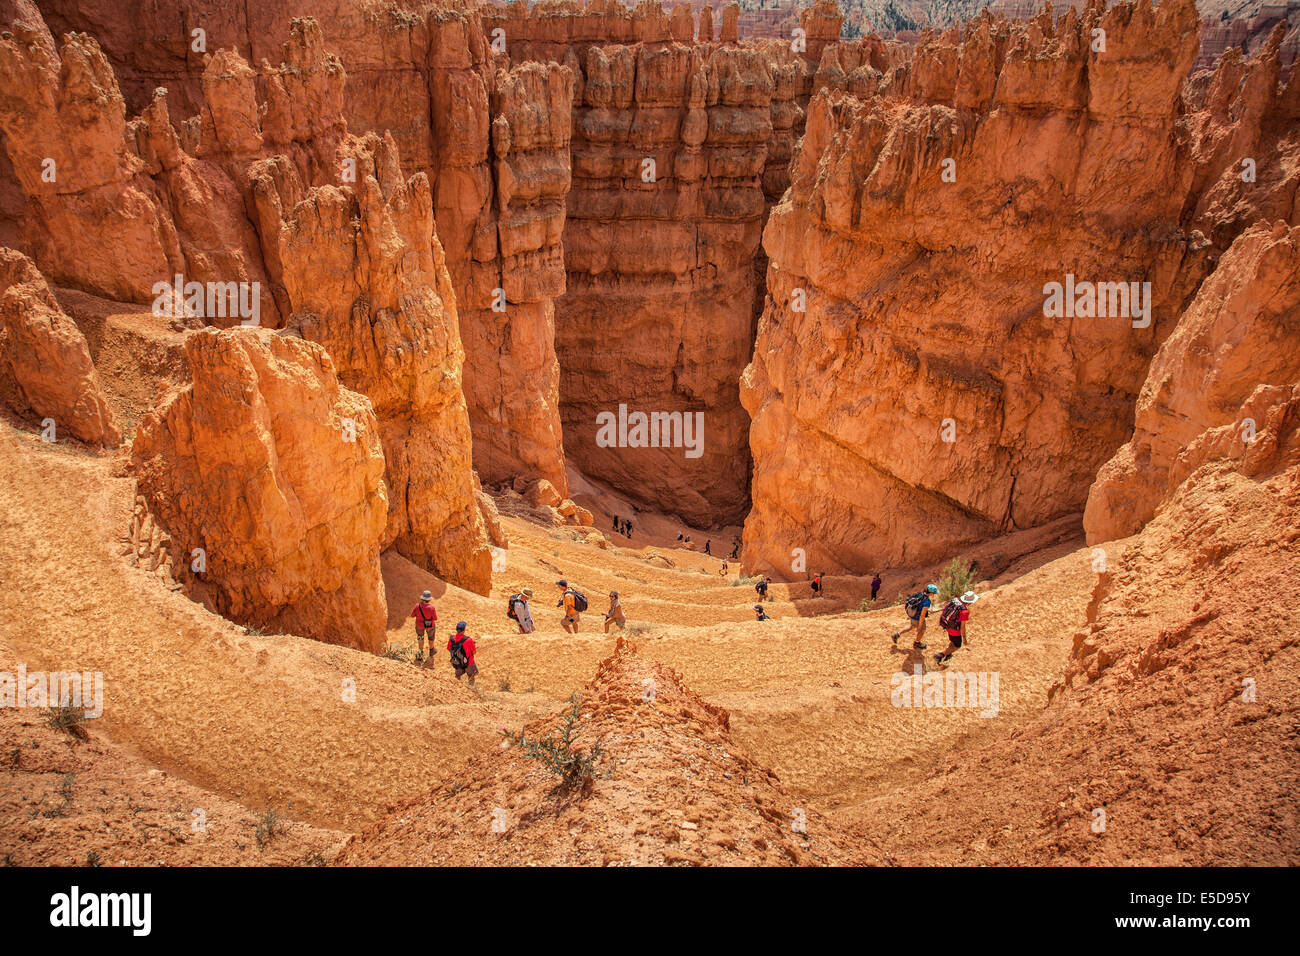 Les touristes dans le paysage rocheux, Bryce Canyon, Utah, USA Banque D'Images